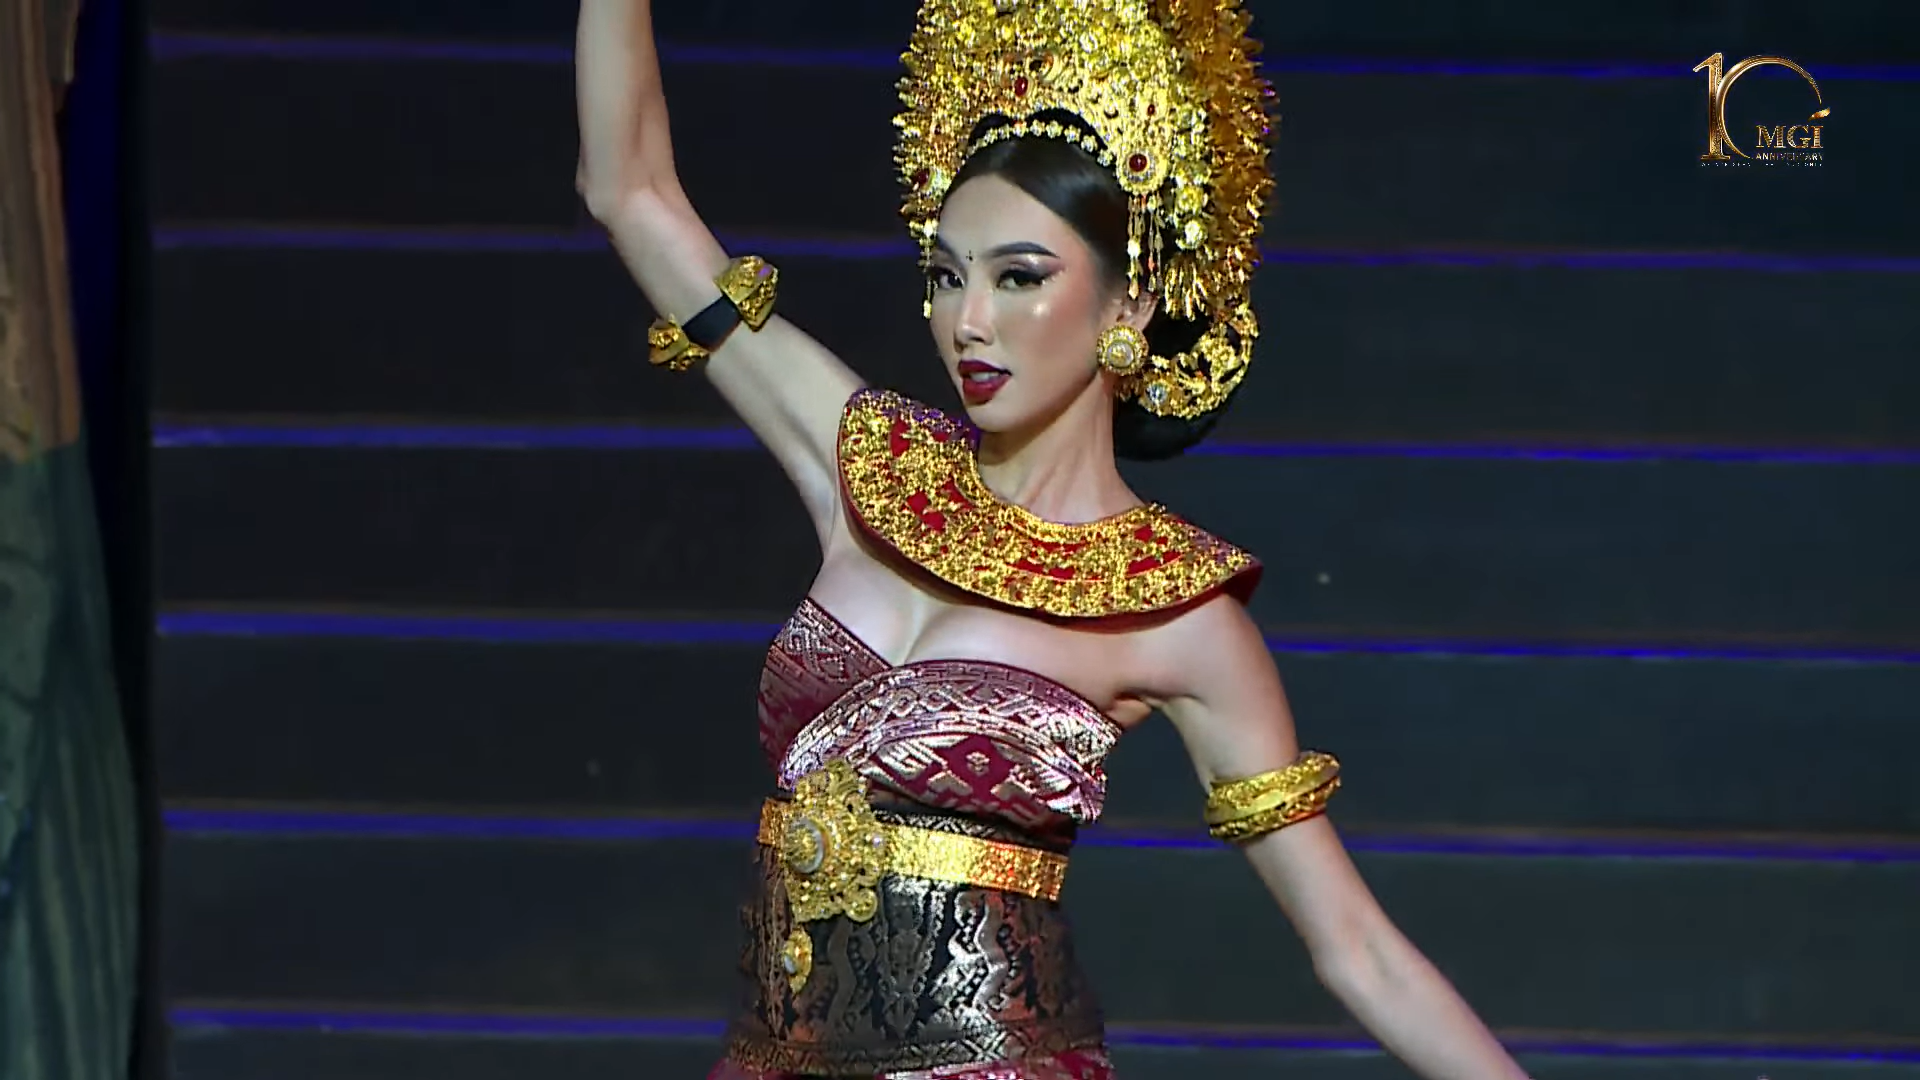 Được biết, Balinese Costume Competition là phần thi xuất hiện lần đầu tiên thuộc khuôn khổ cuộc thi “Miss Grand International 2022“. Là một đất nước với nhiều văn hóa, truyền thống đẹp đẽ, không chỉ các cô gái của “Miss Grand International 2022” mà cả Hoa hậu Thùy Tiên cũng được trải nghiệm trình diễn trong trang phục Bali. Ảnh: NVCC.